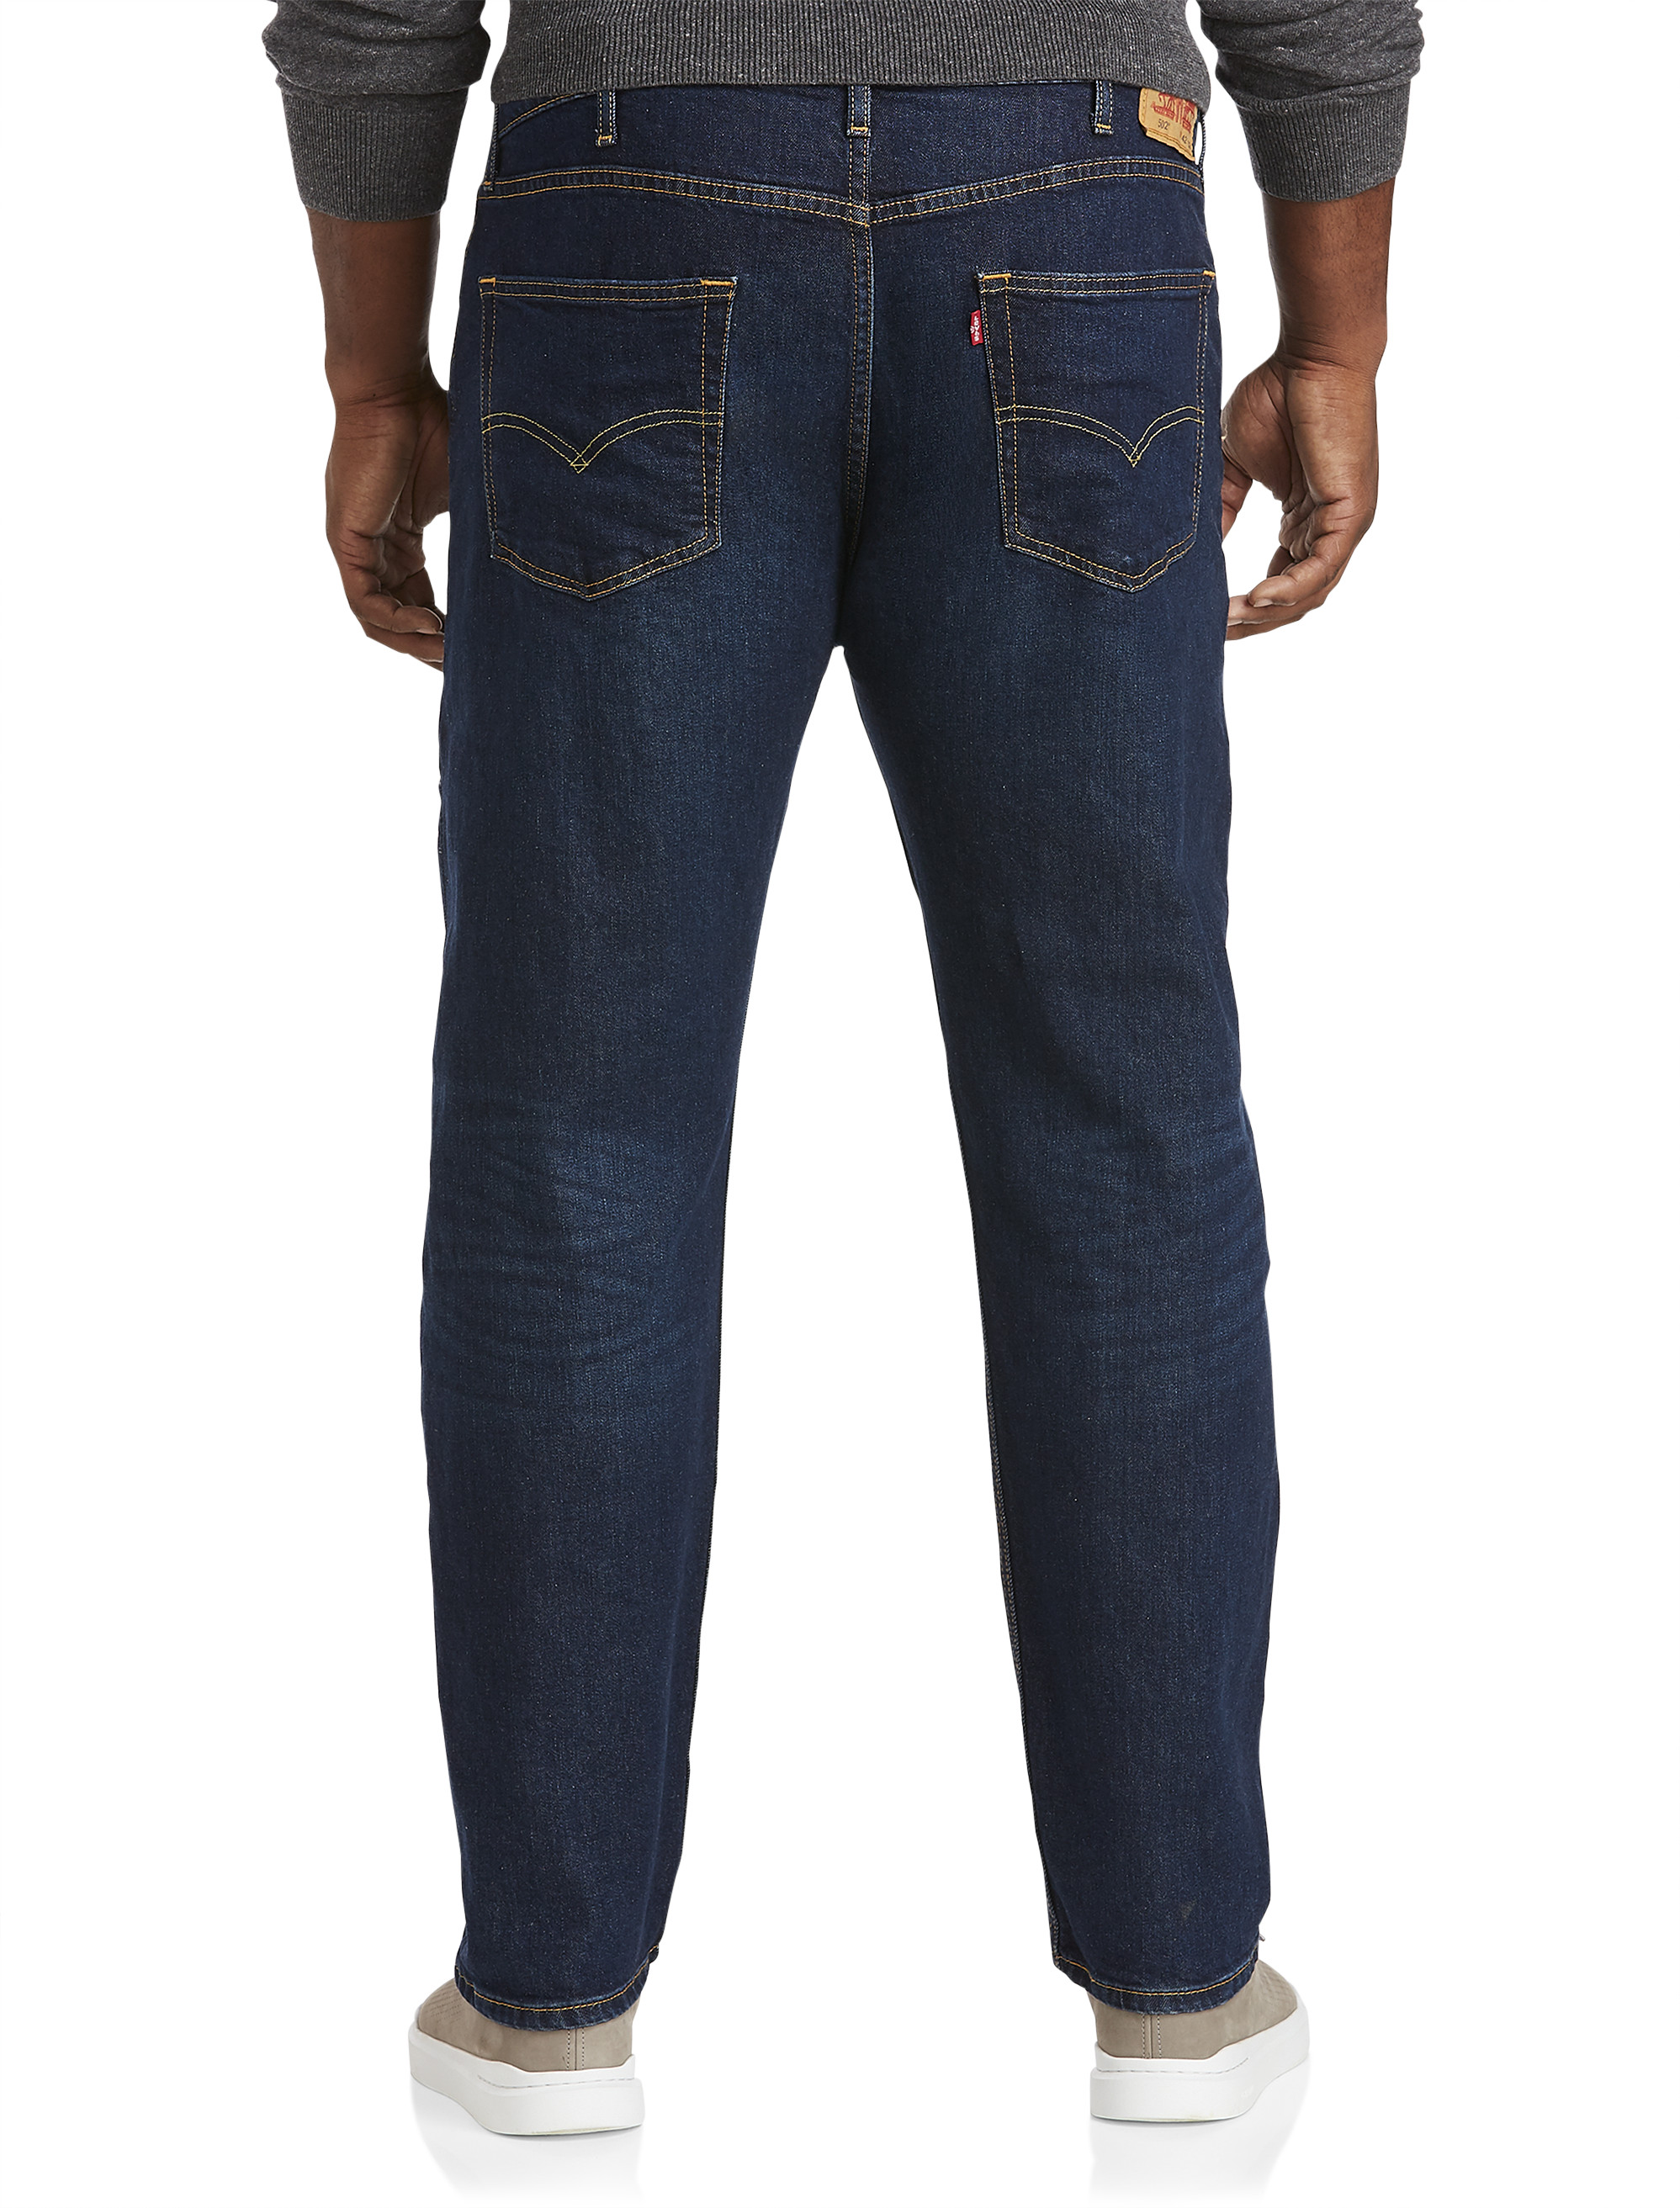 Big + Tall Jeans | DXL